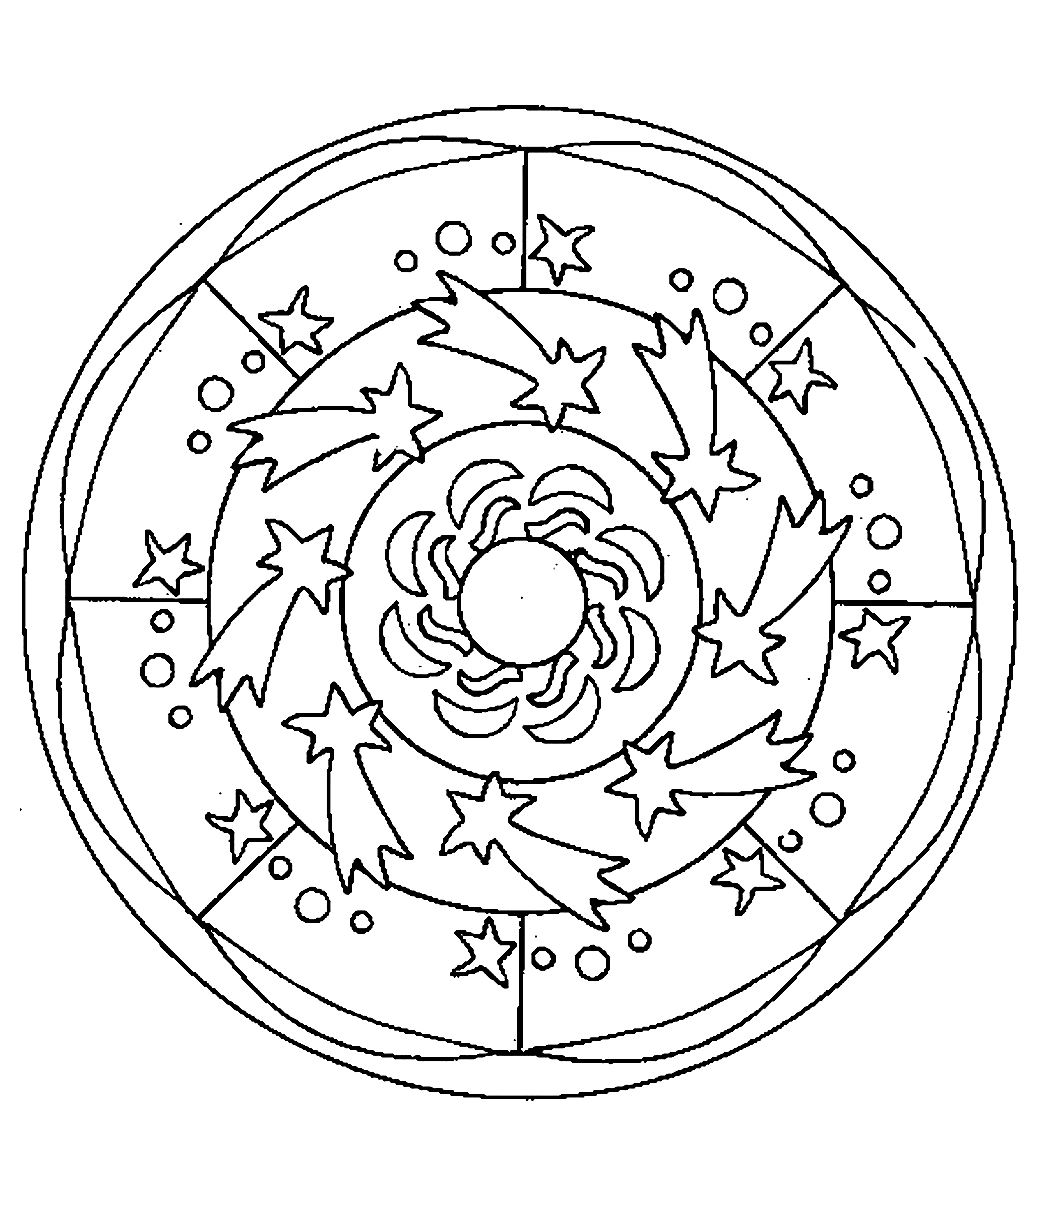 Mandala para colorir ao estilo 'espacial' com belas estrelas espalhadas pelo círculo. Fácil de colorir.